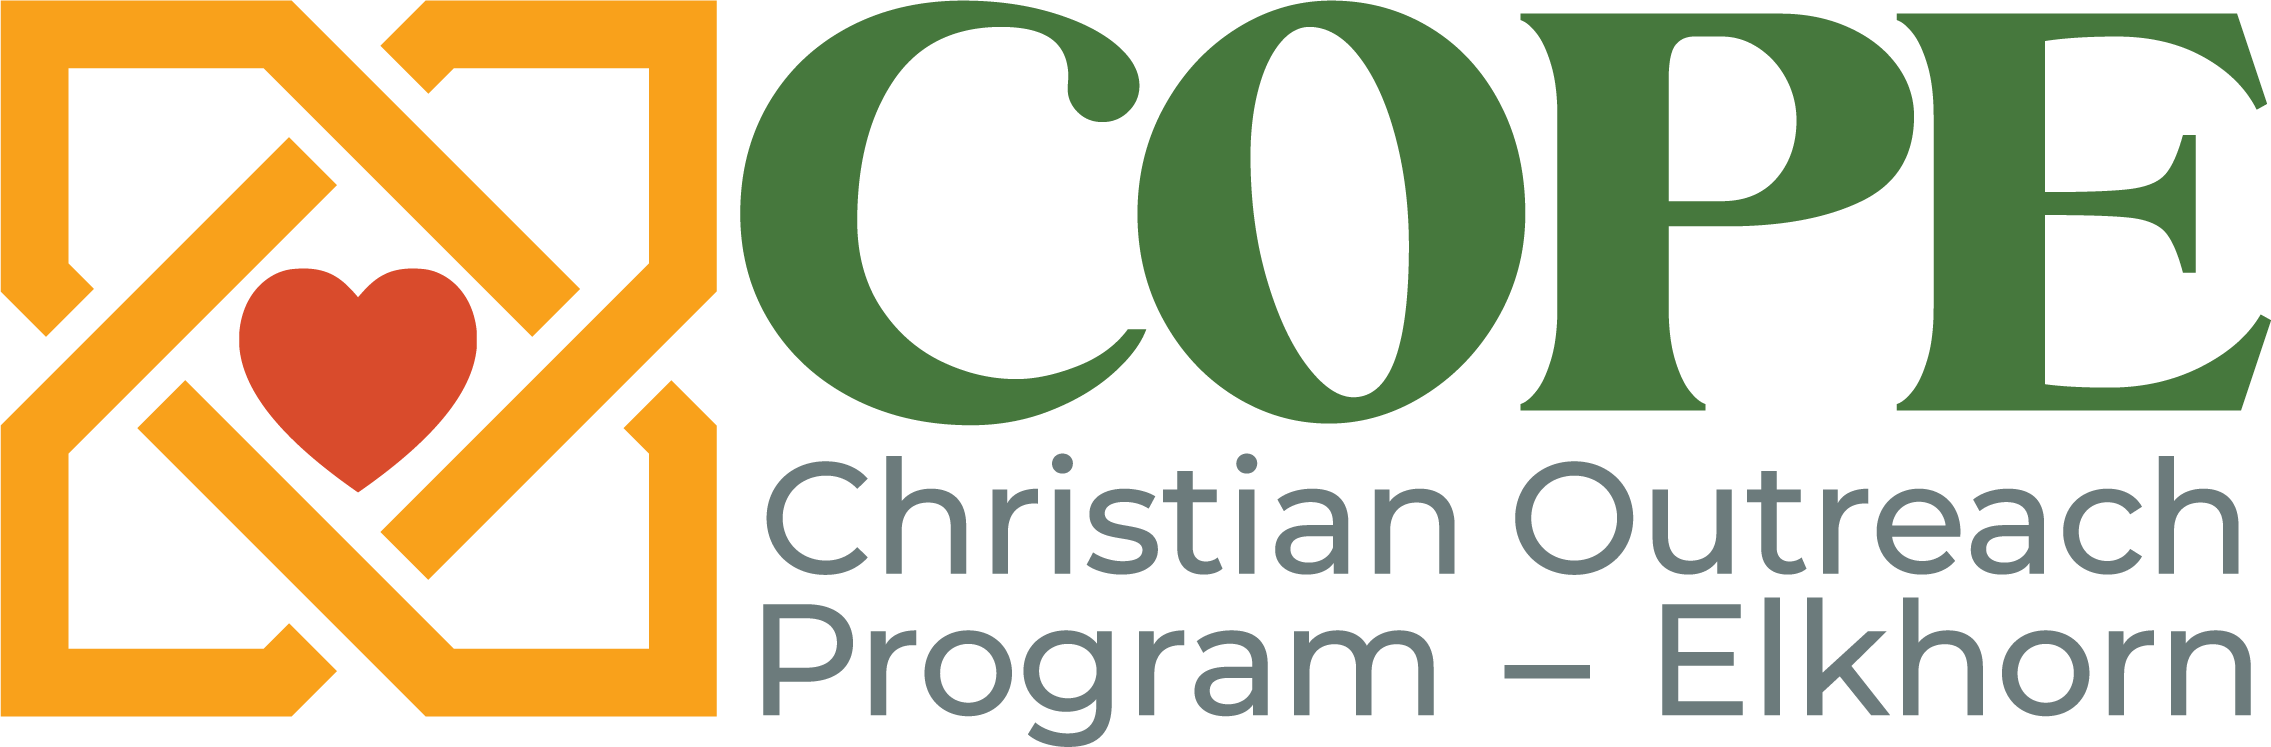 COPE Christian Outreach Program - Elkhorn